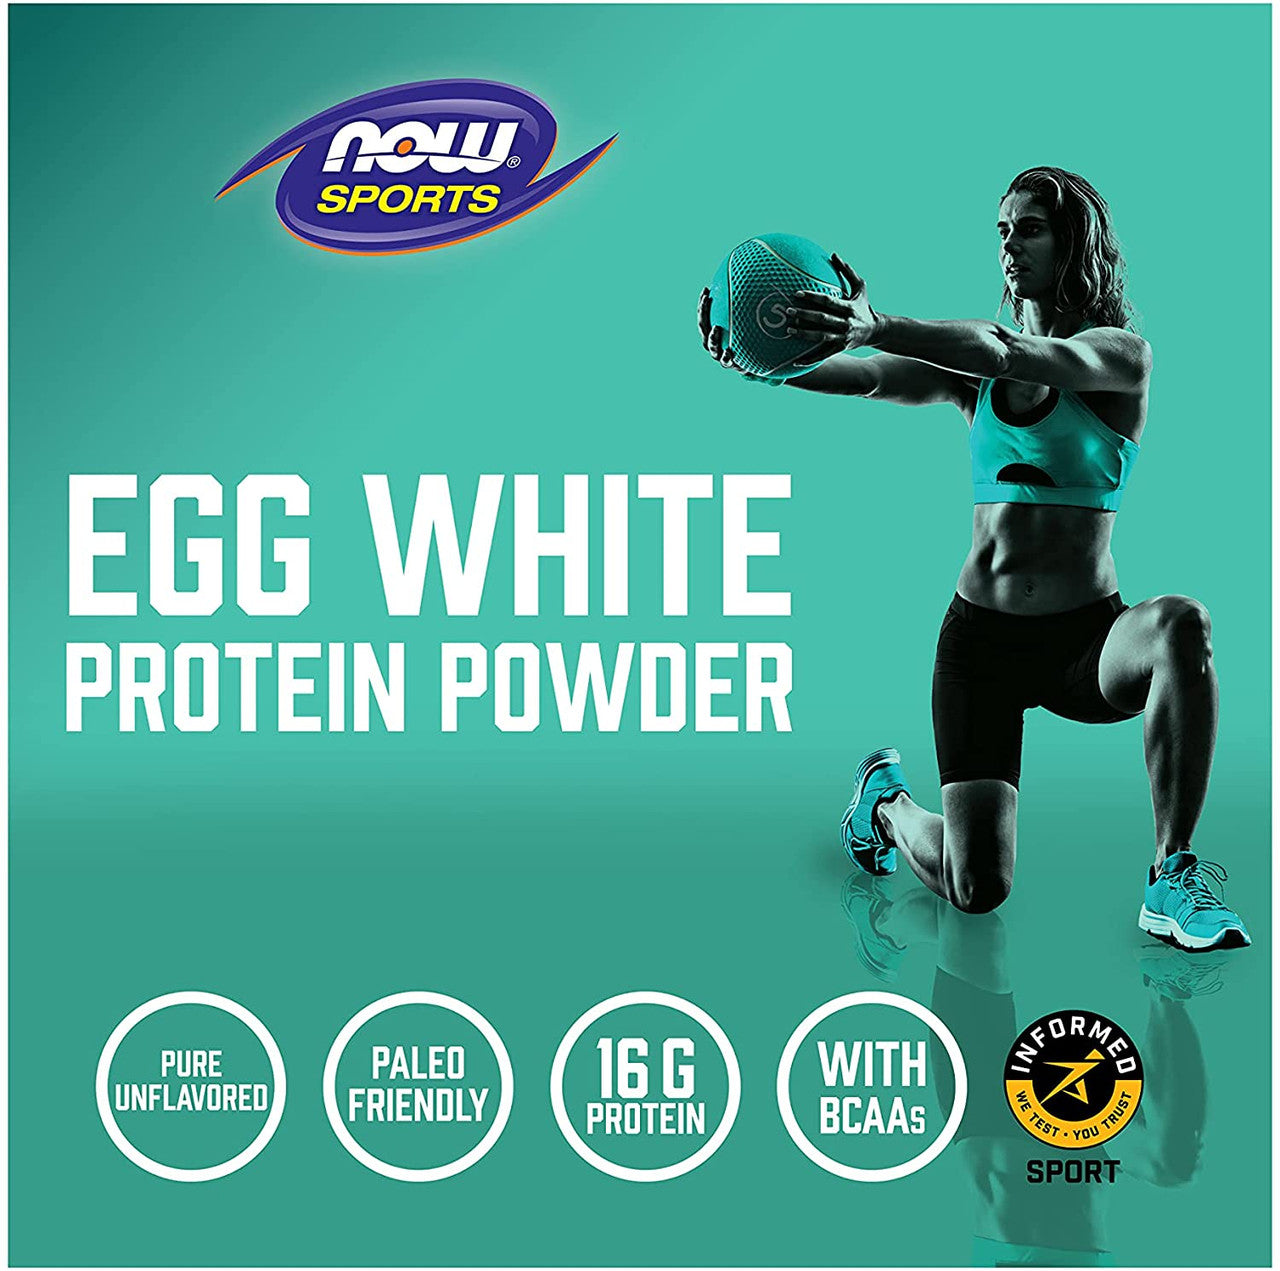 Now EggWhite Protein powder